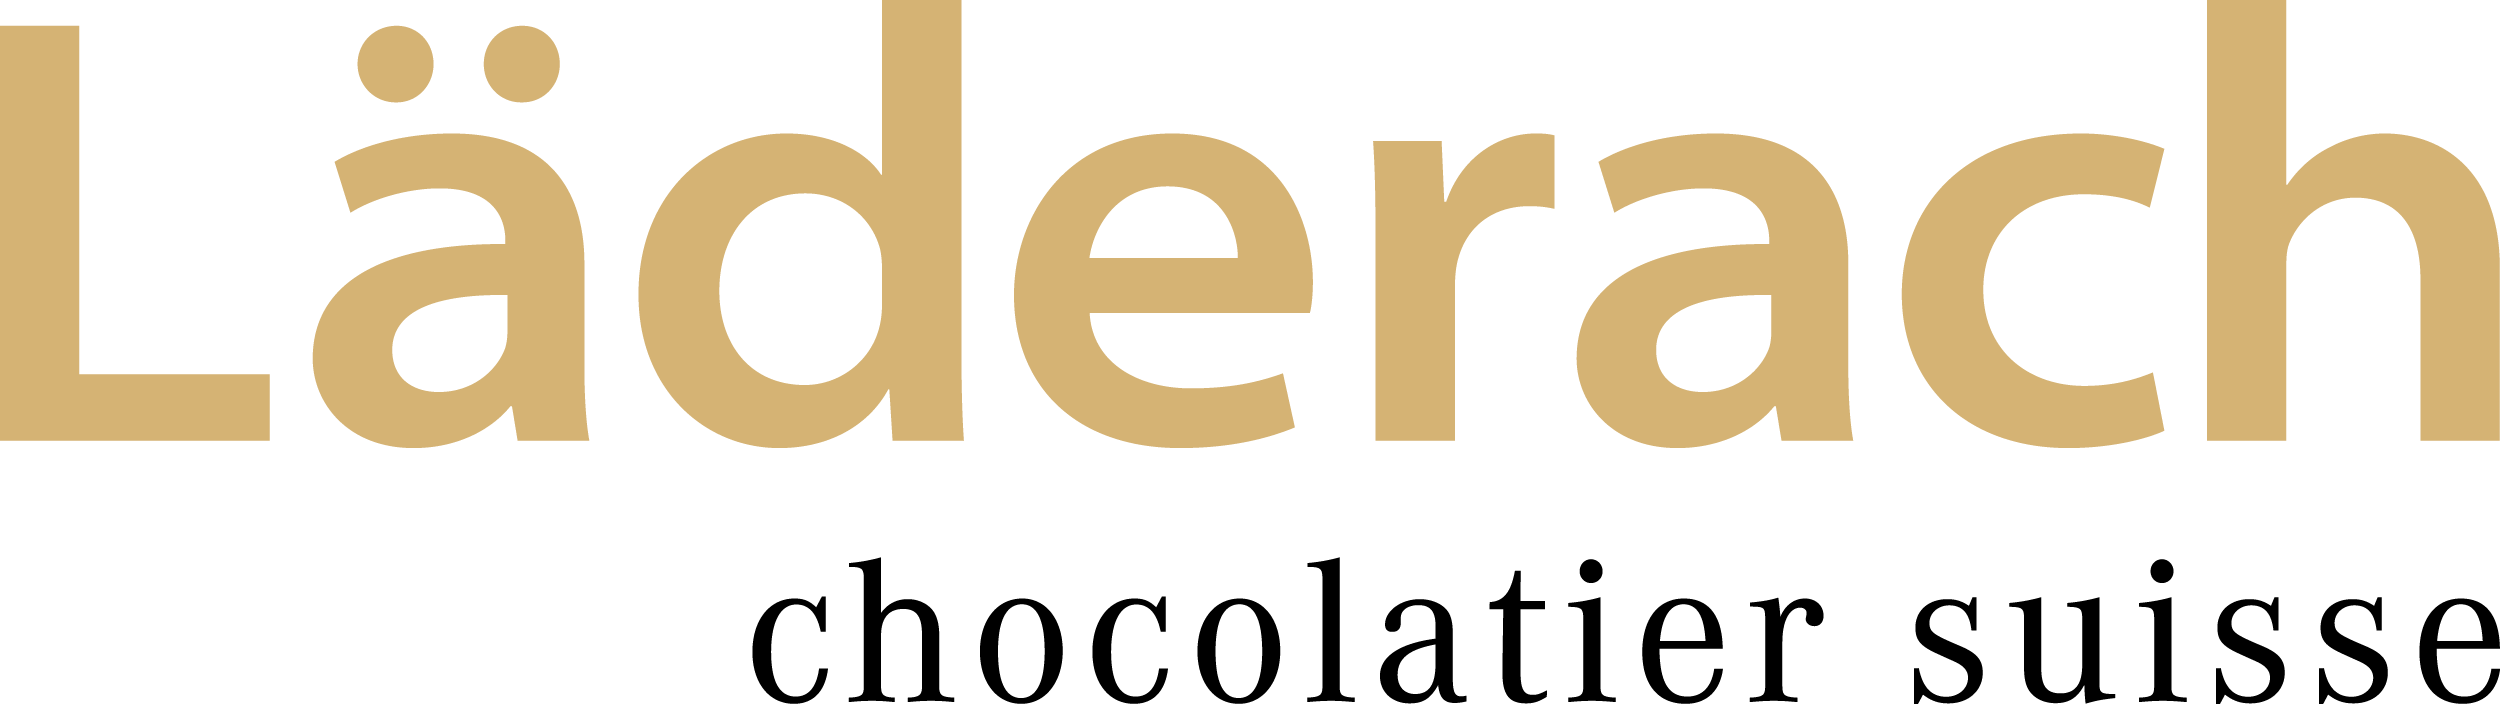 Laderach Chocolatier Suisse Logo